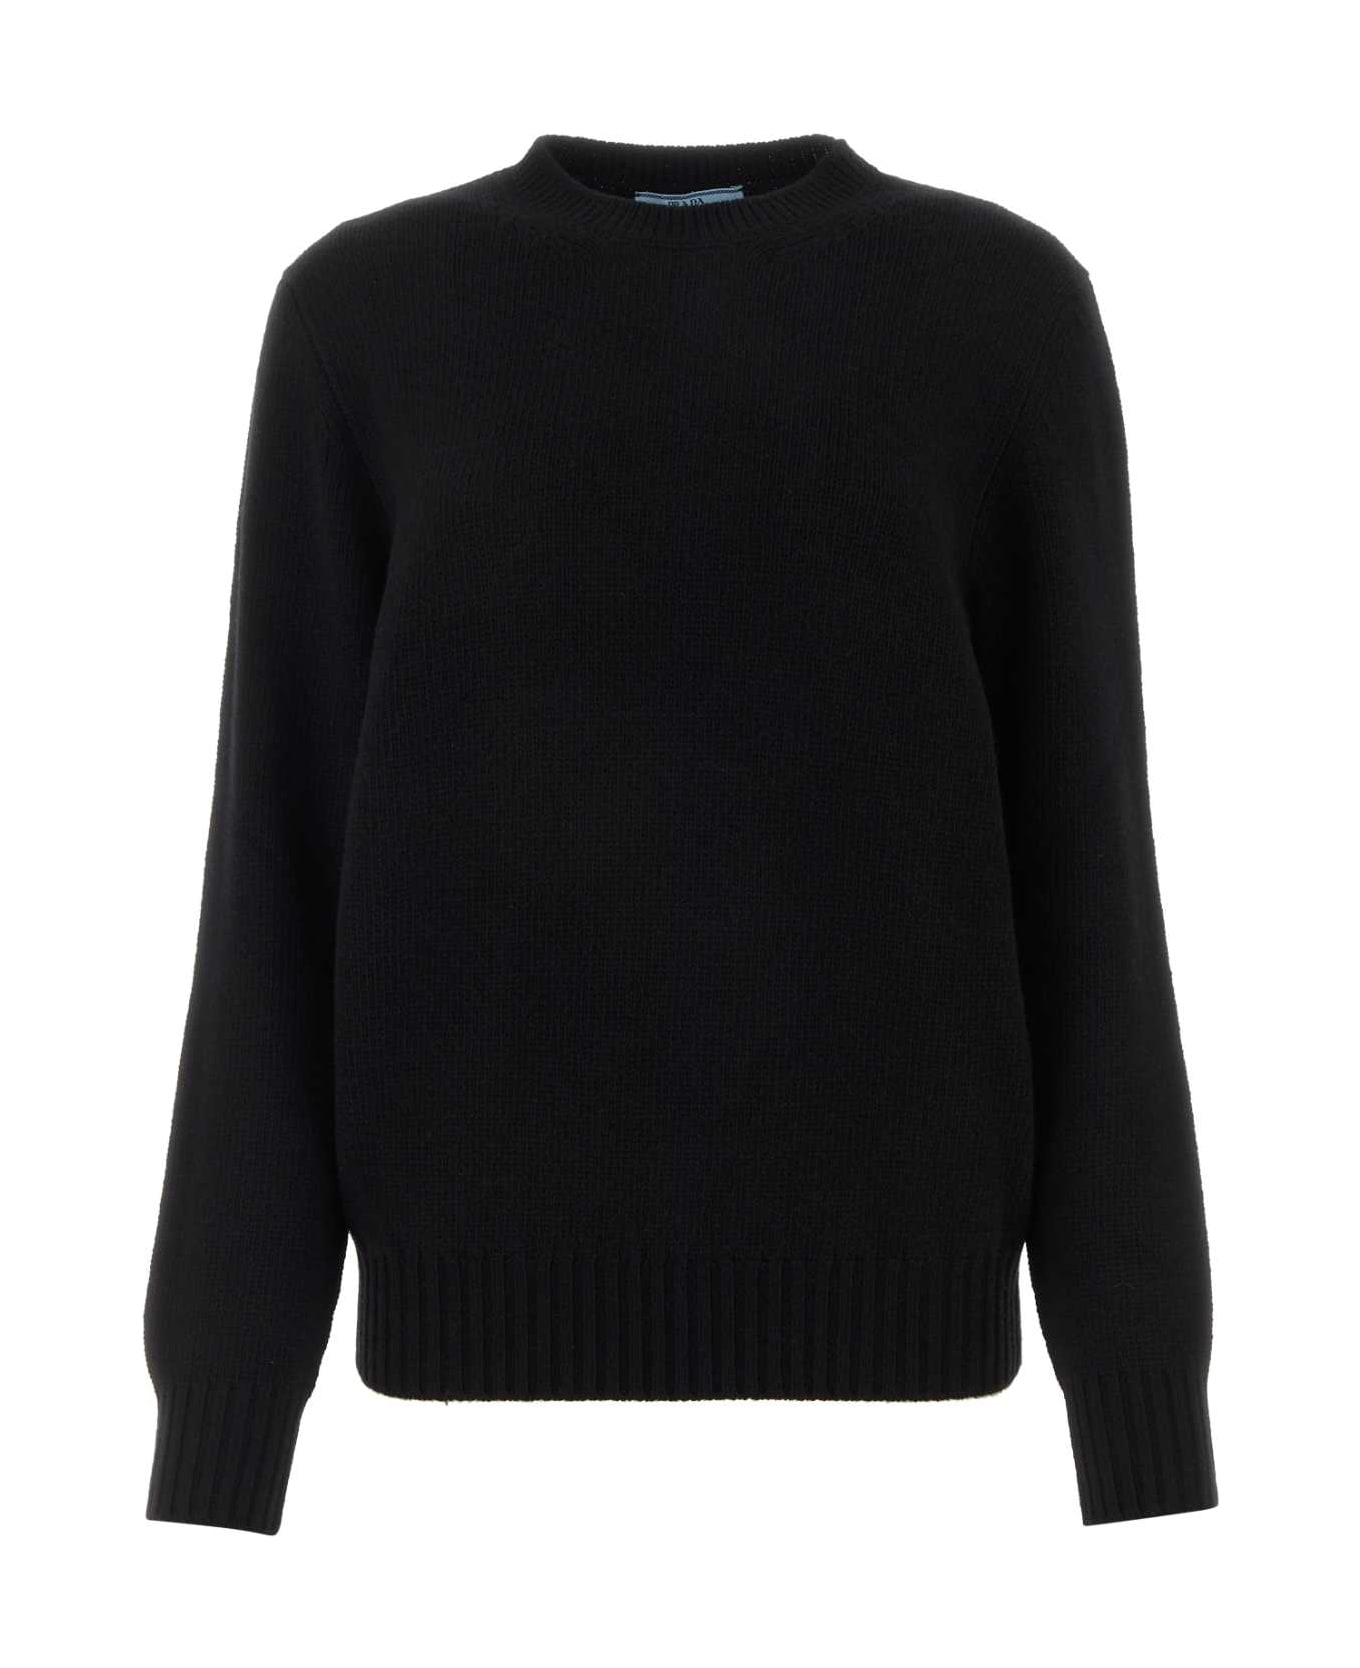 Prada Black Wool Blend Sweater - Black ニットウェア